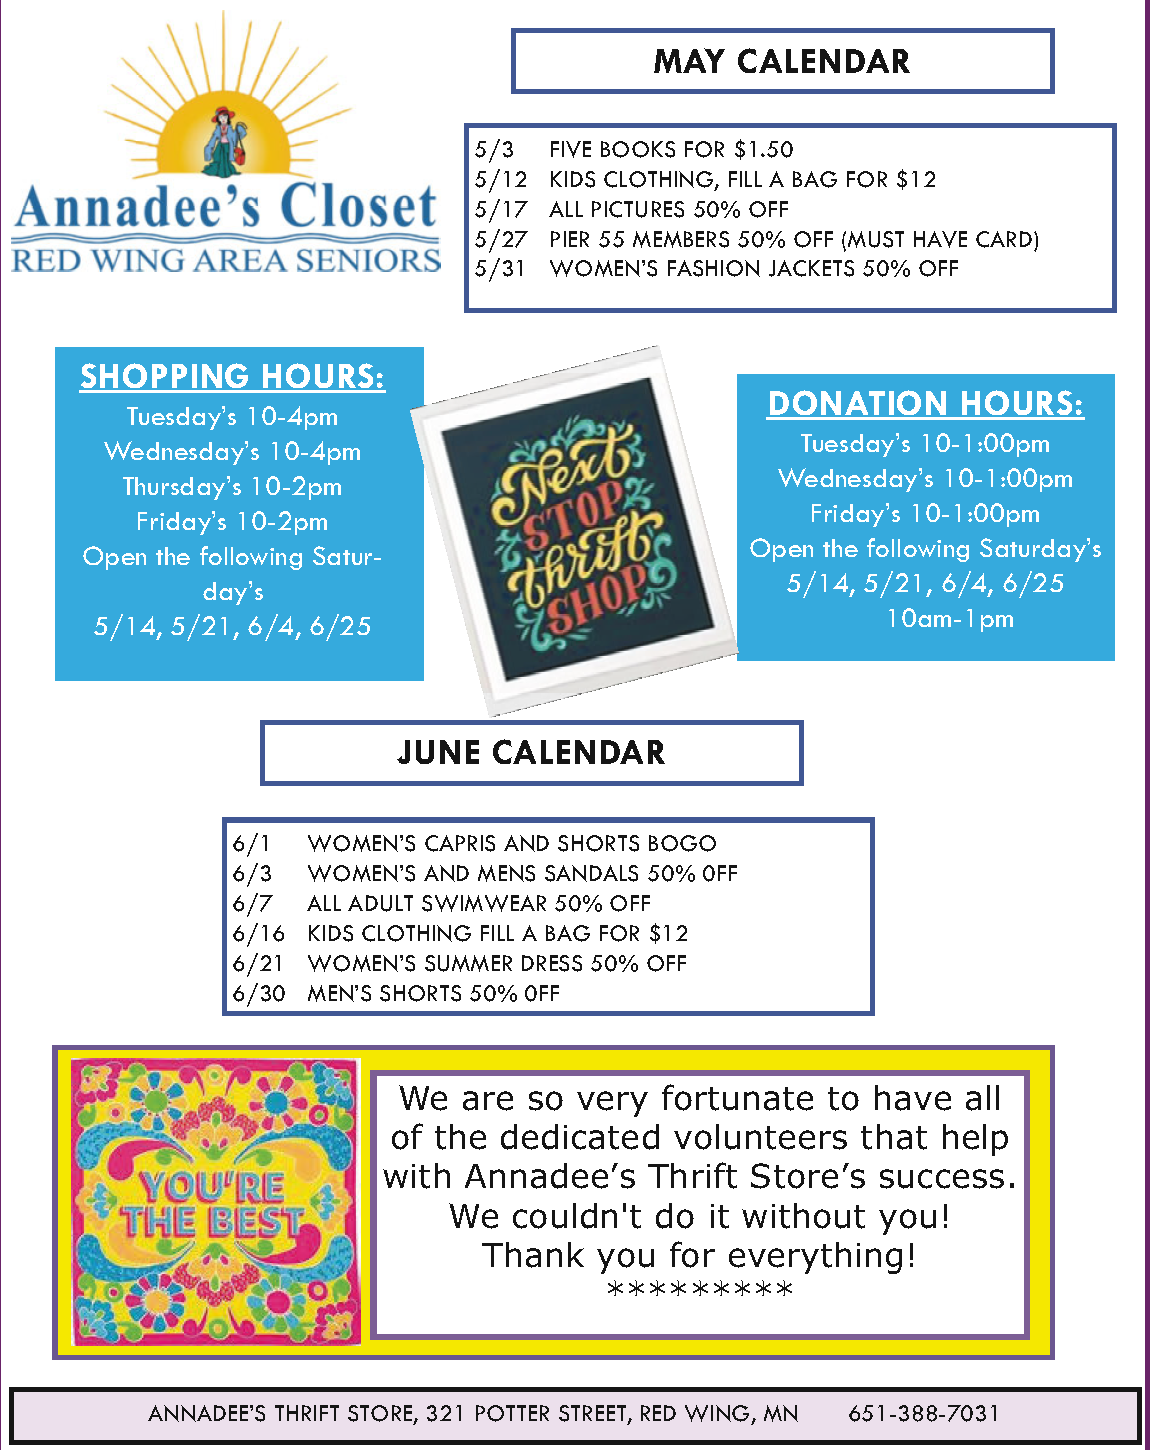 Annadee's calendar